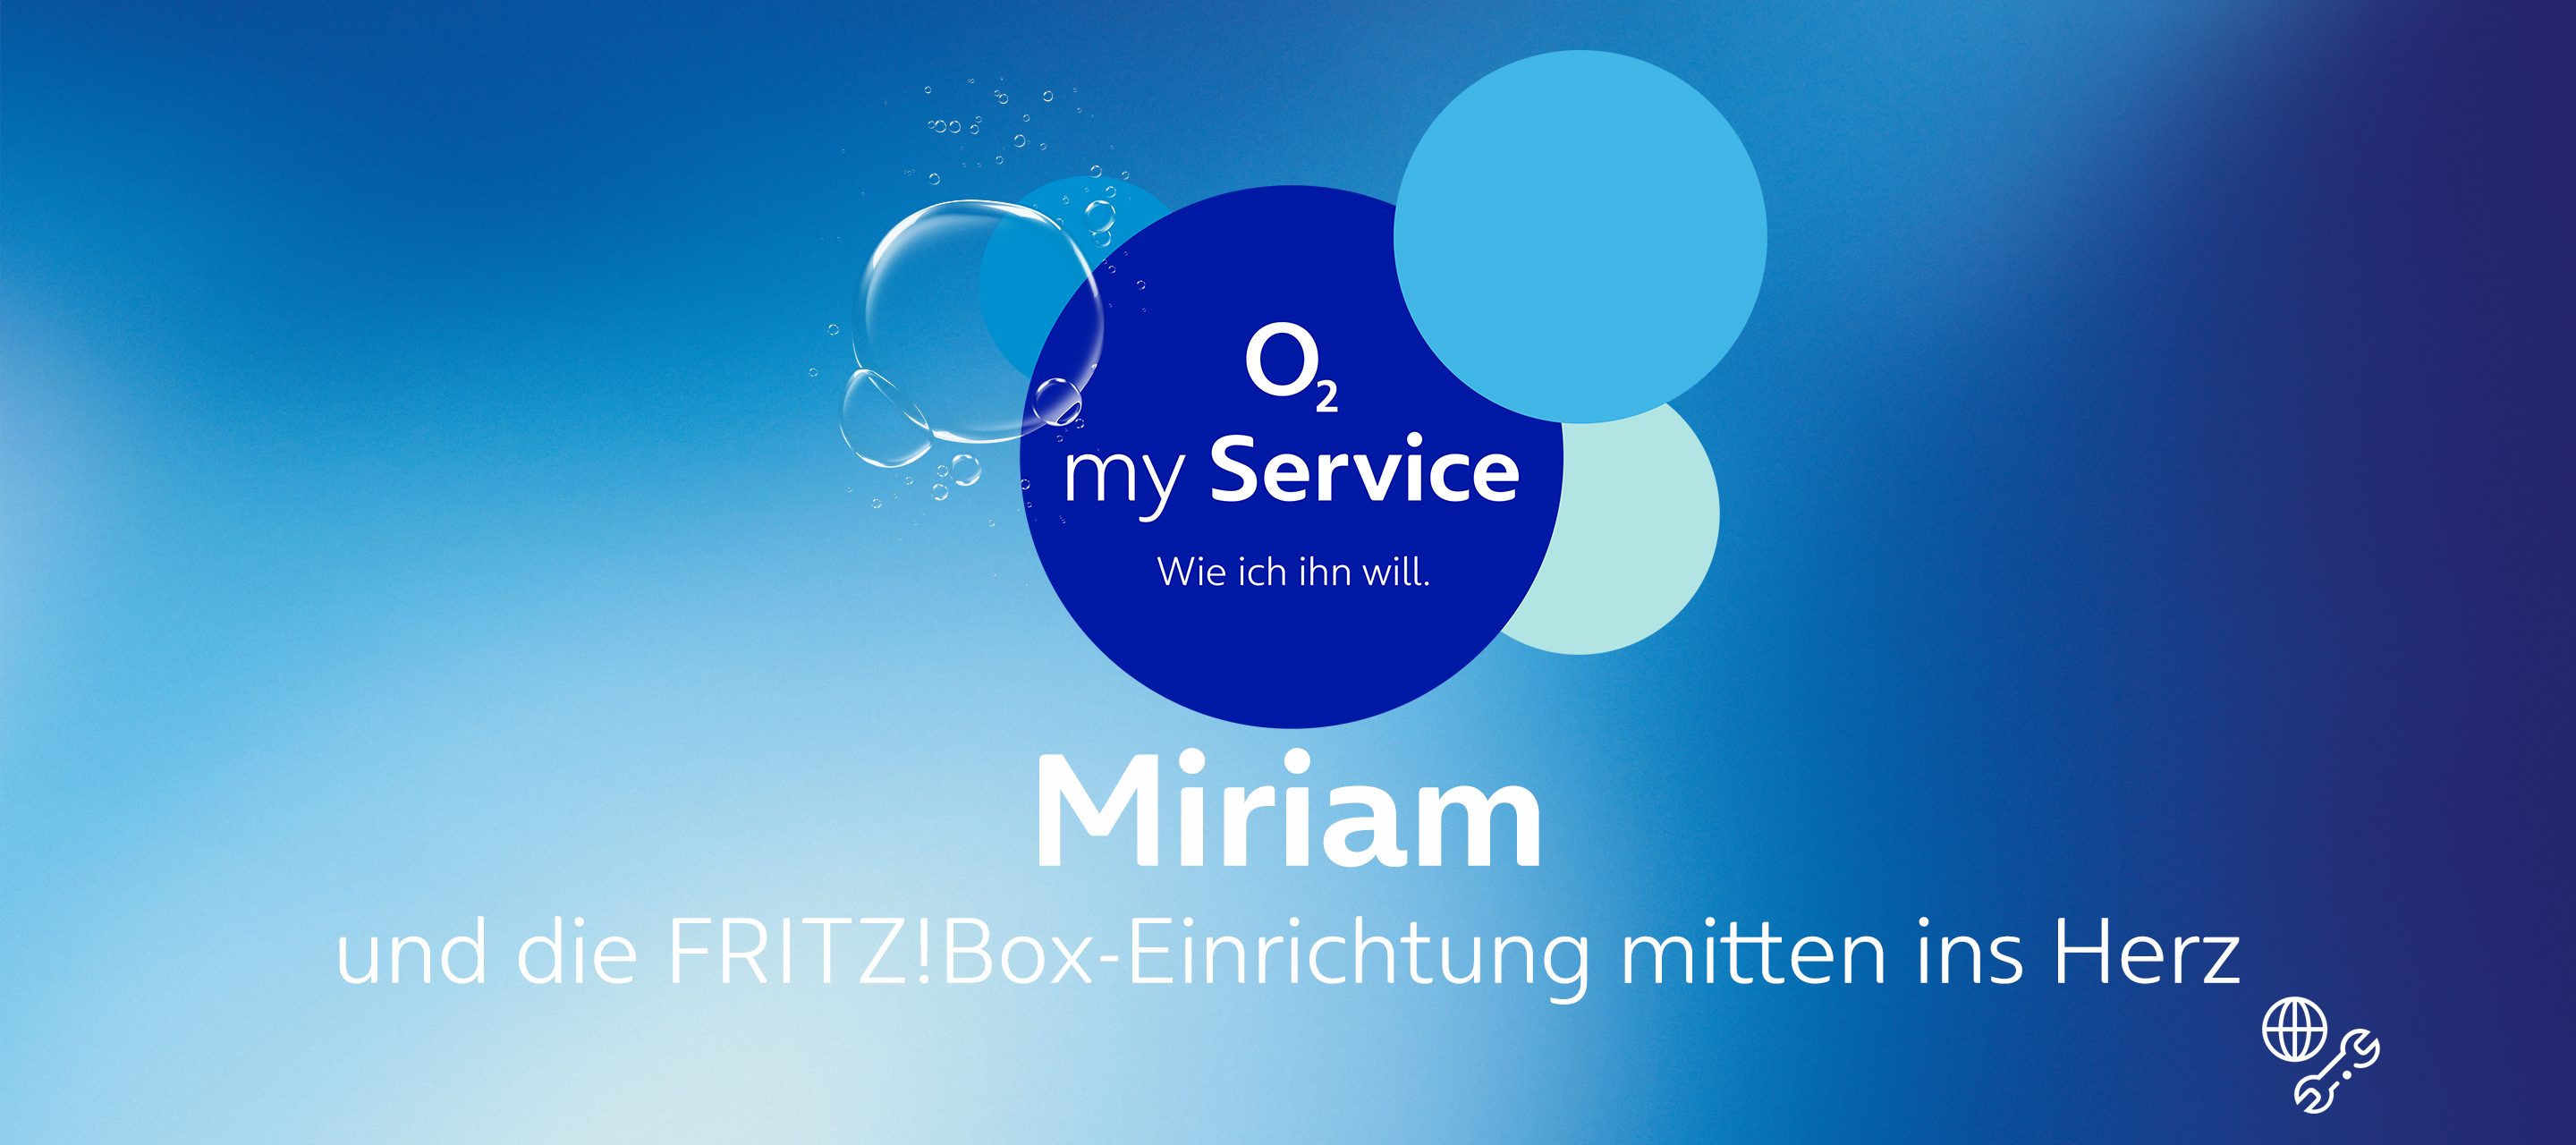 Die Gesichter hinter O₂ my Service: Miriam und die FRITZ!Box-Einrichtung mitten ins Herz